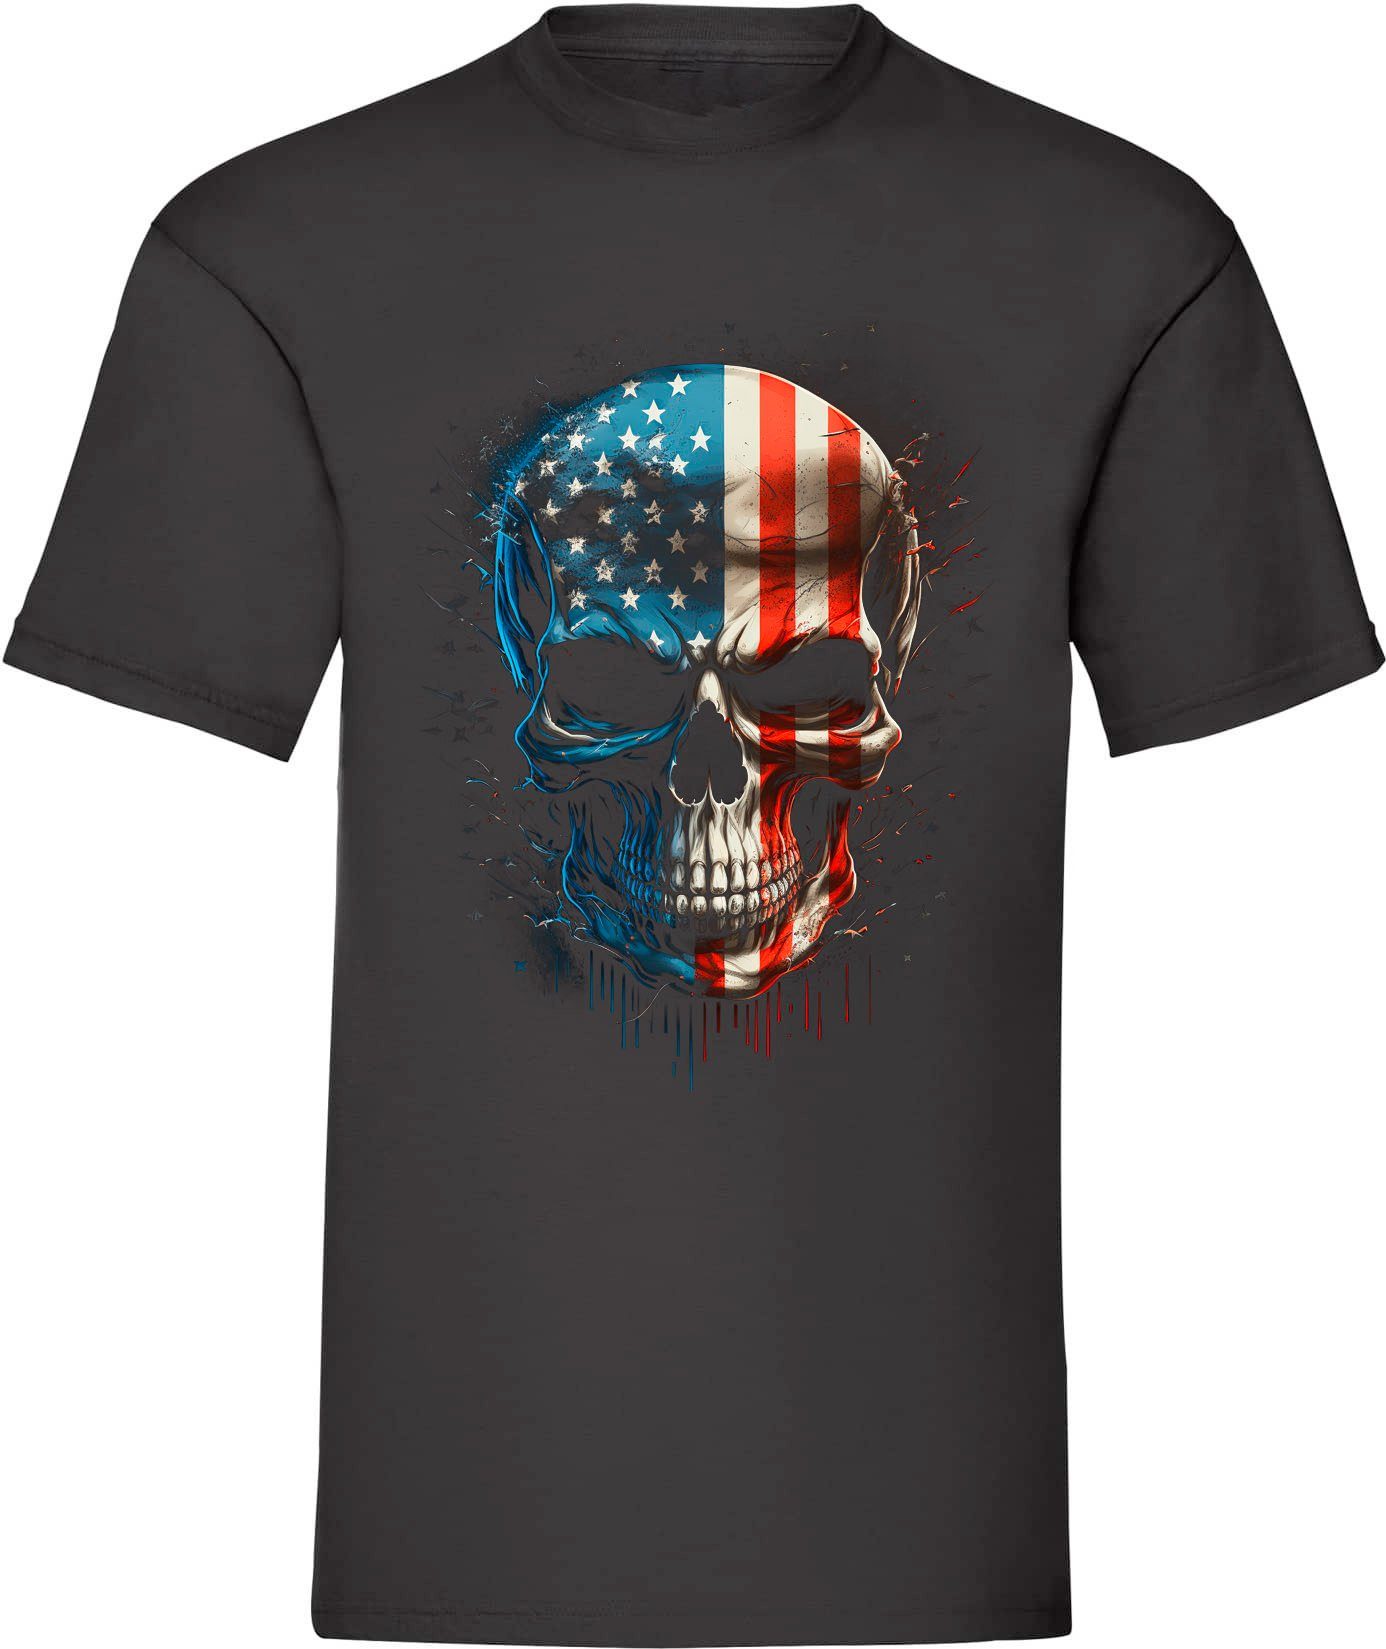 Banco T-Shirt Herren T-Shirt Totenkopf aus 100% mit Baumwolle Schwarz (30) Aufdruck USA